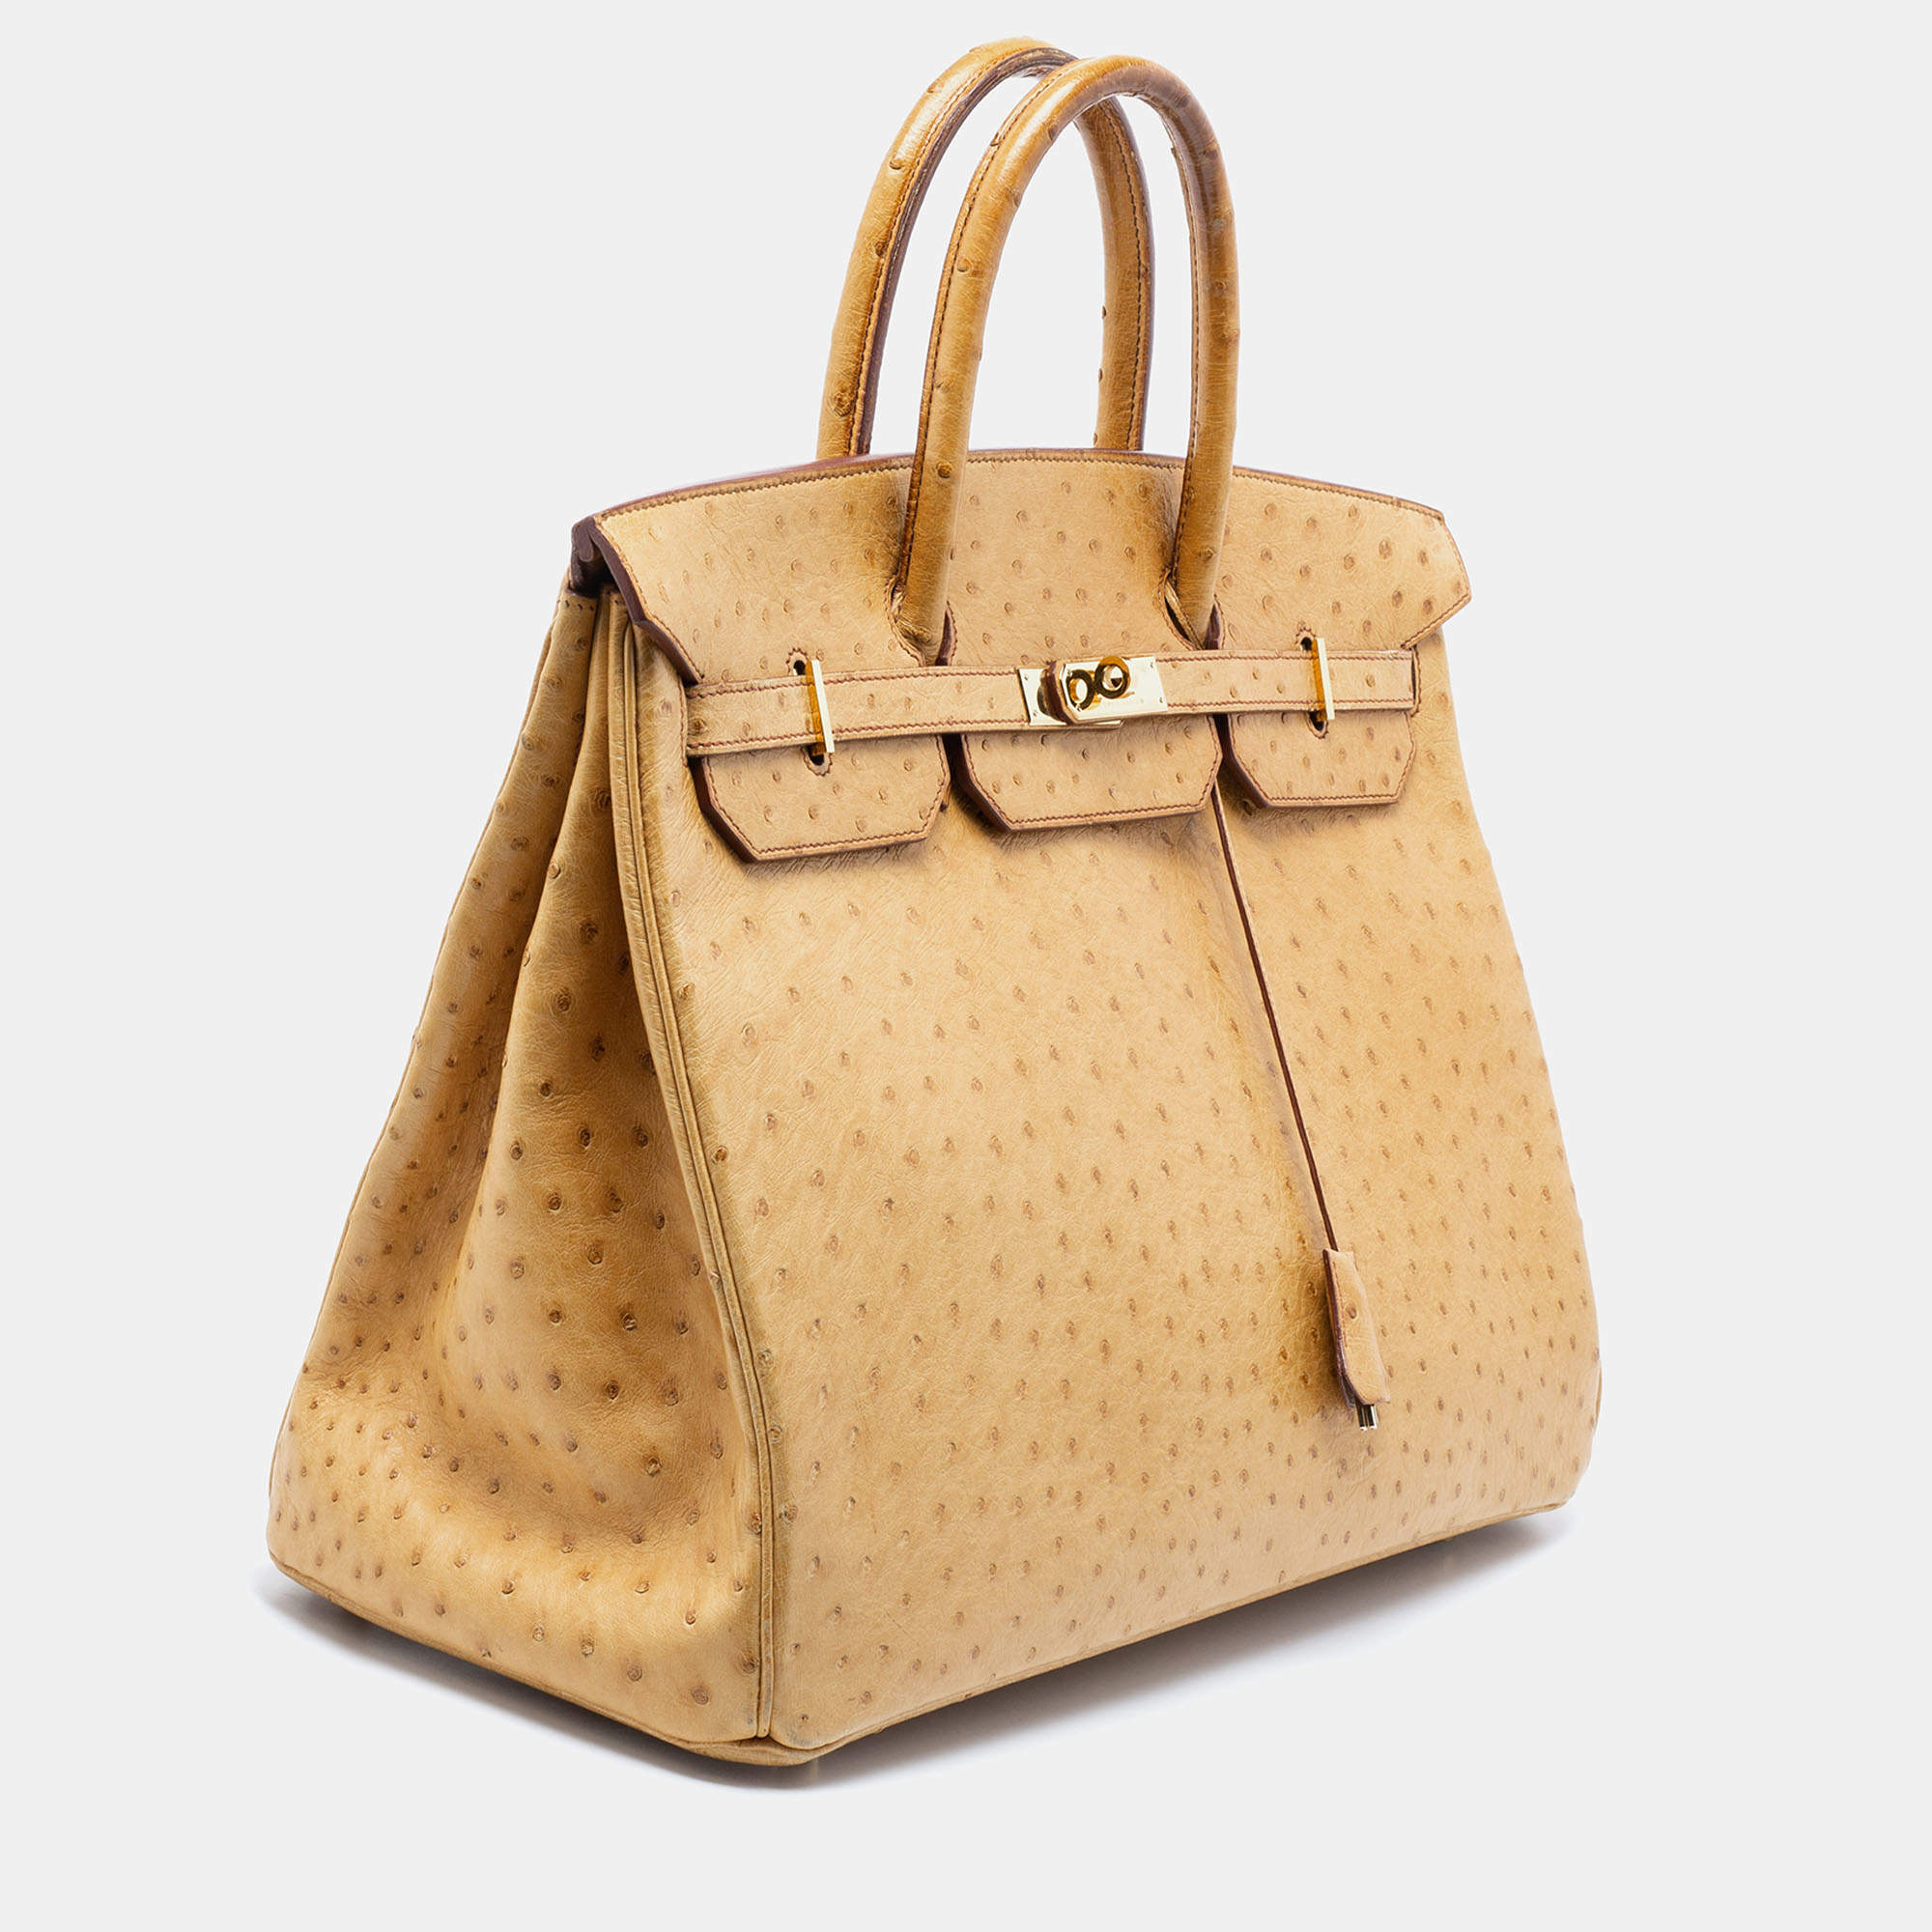 Hermès Birkin 40 cm Handbag in Gold Ostrich Leather